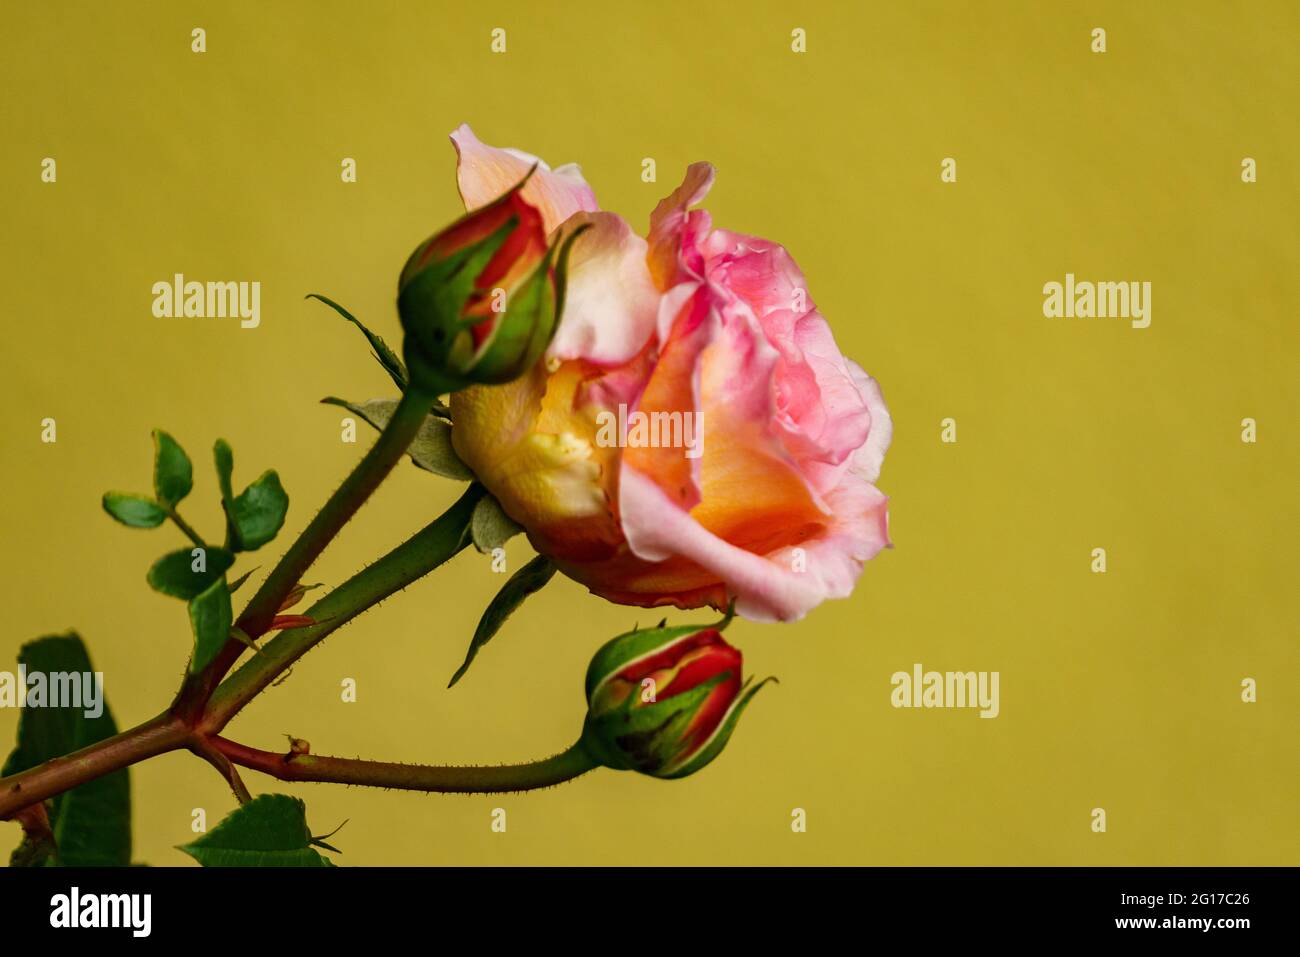 rote Rose am Rosenstock vor einer Hauswand, arancio, rosa, gelso mehrfarbig im grünen Blättermeer. Morgentau auf Rosenknospe. Simbolo für Liebe und Treue Foto Stock